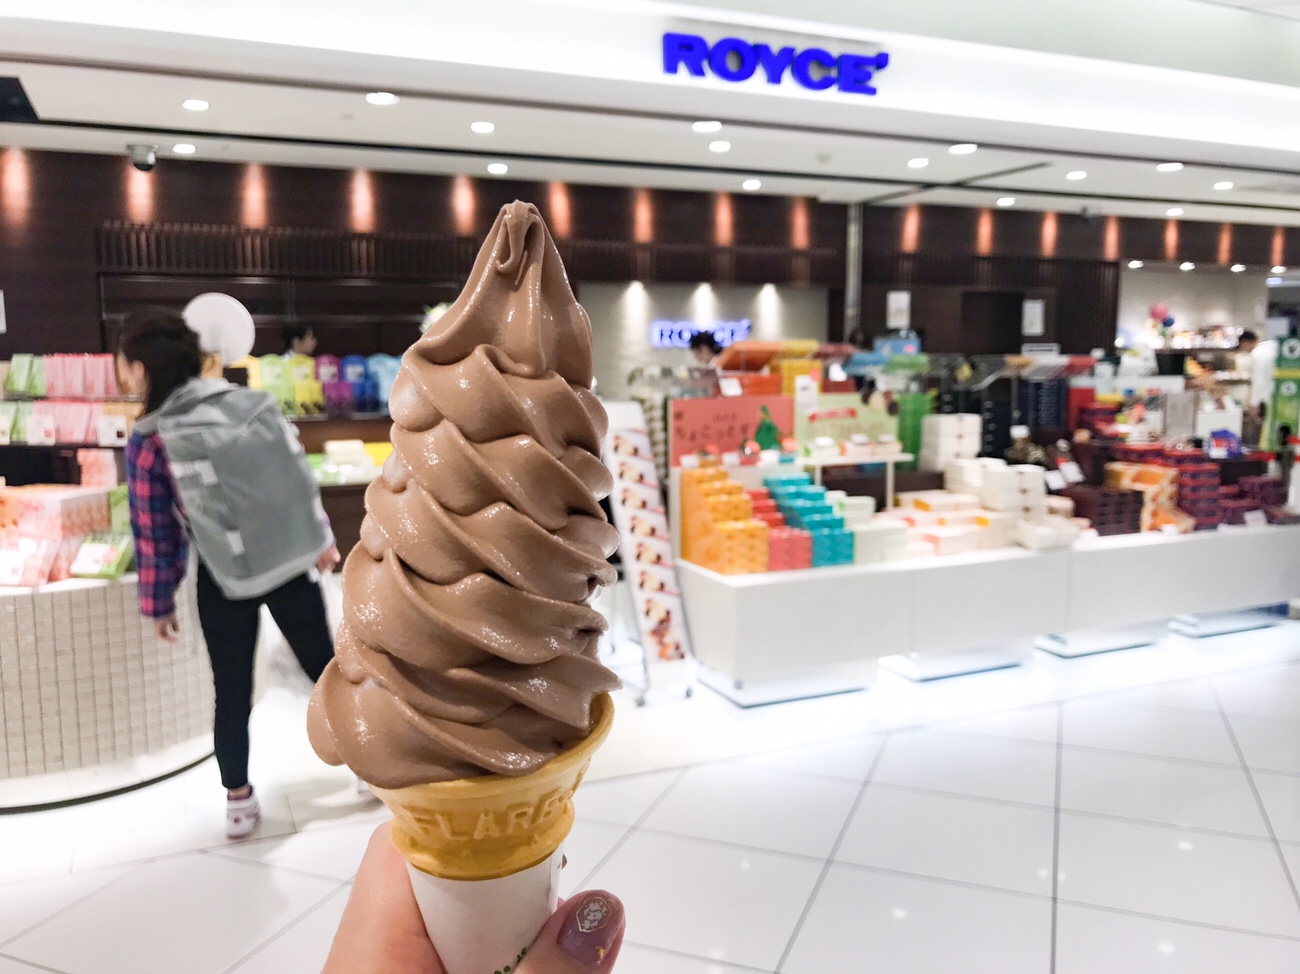 ロイズ チョコレートソフトクリーム 新千歳空港グルメ